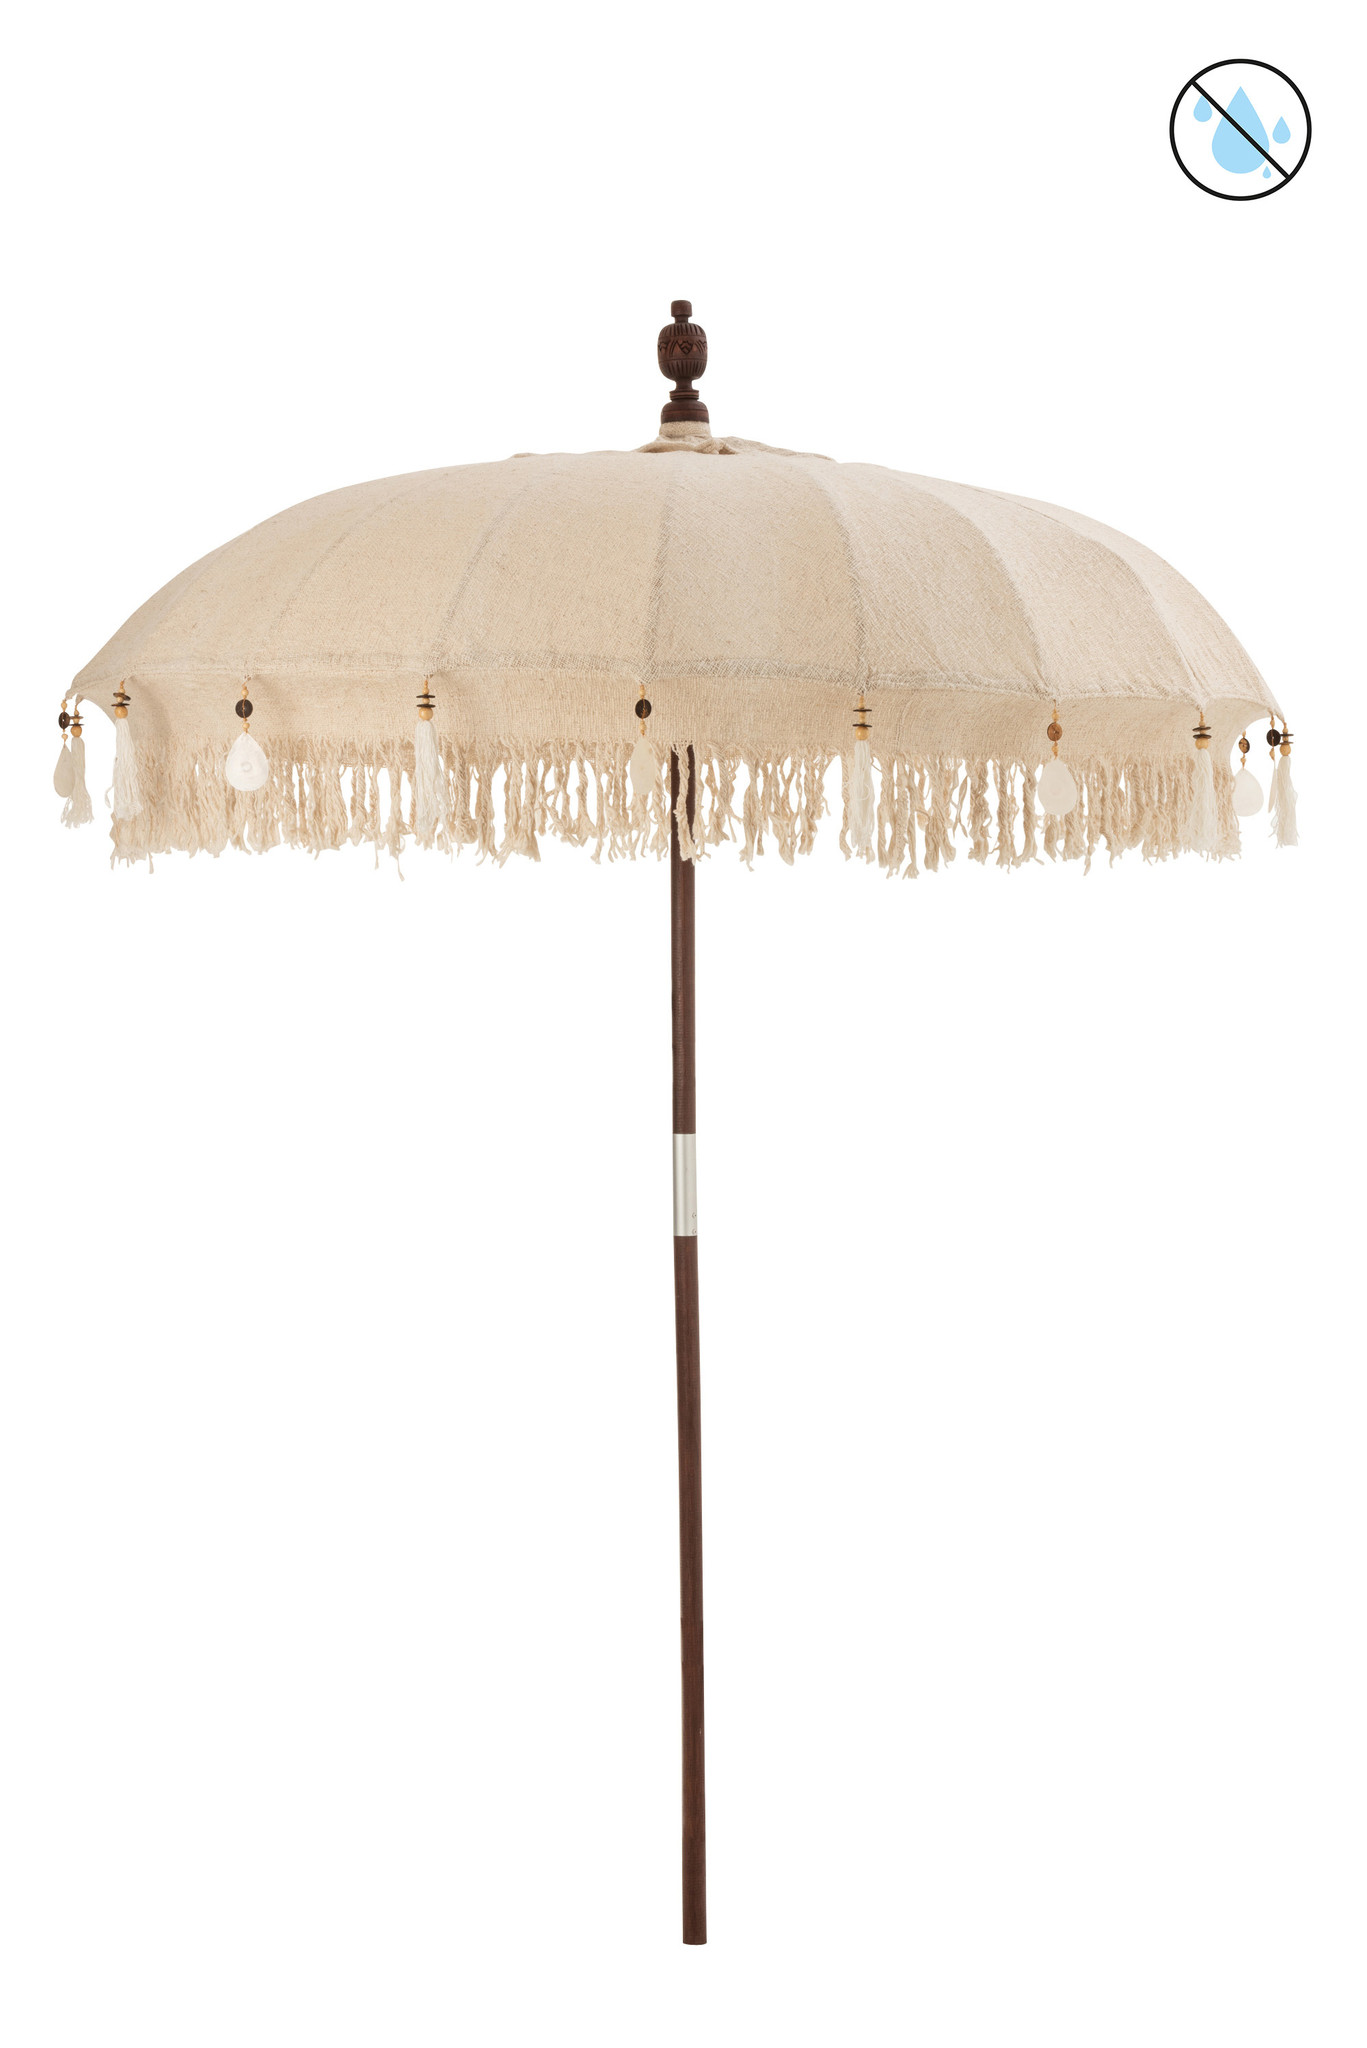 Zenuw Opgewonden zijn dennenboom Ibiza parasol / Beige - Balinese parasol - Livv Lifestyle